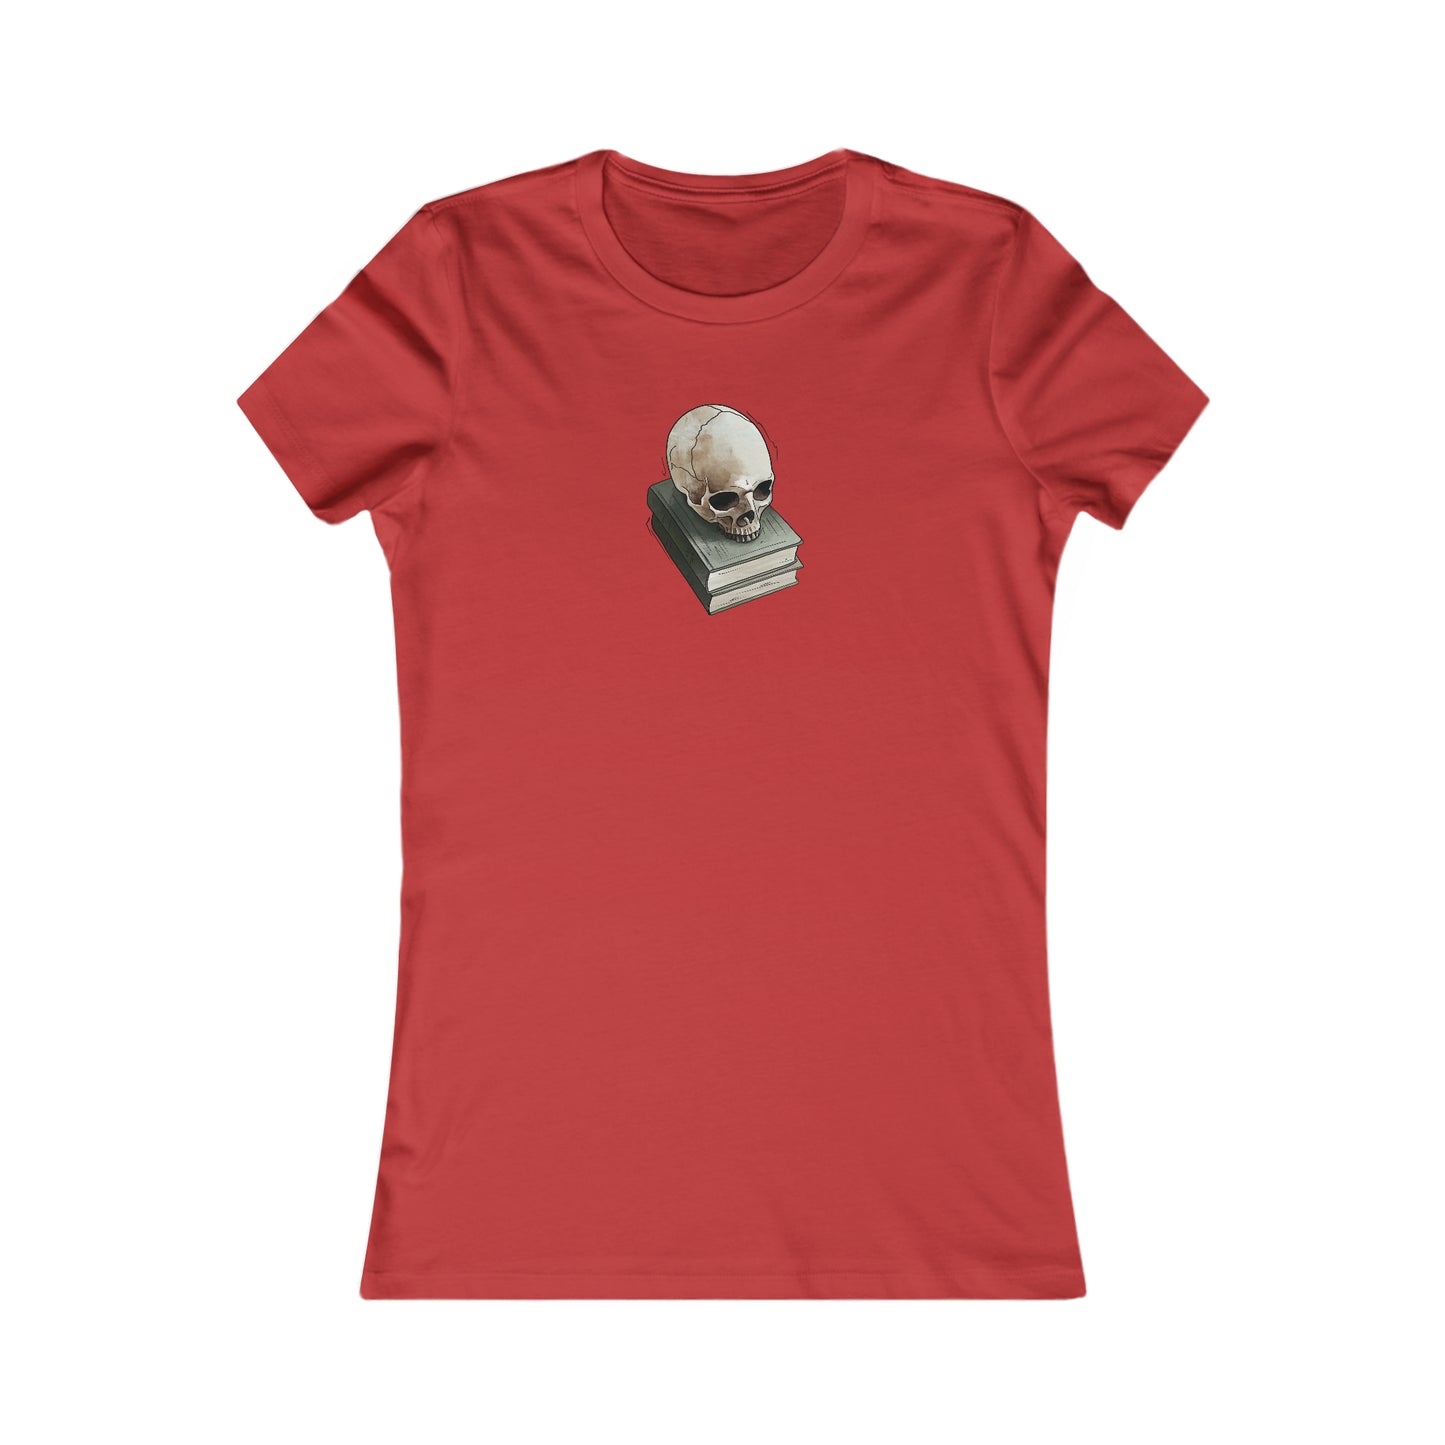 Skull & Books - Women's T-Shirt